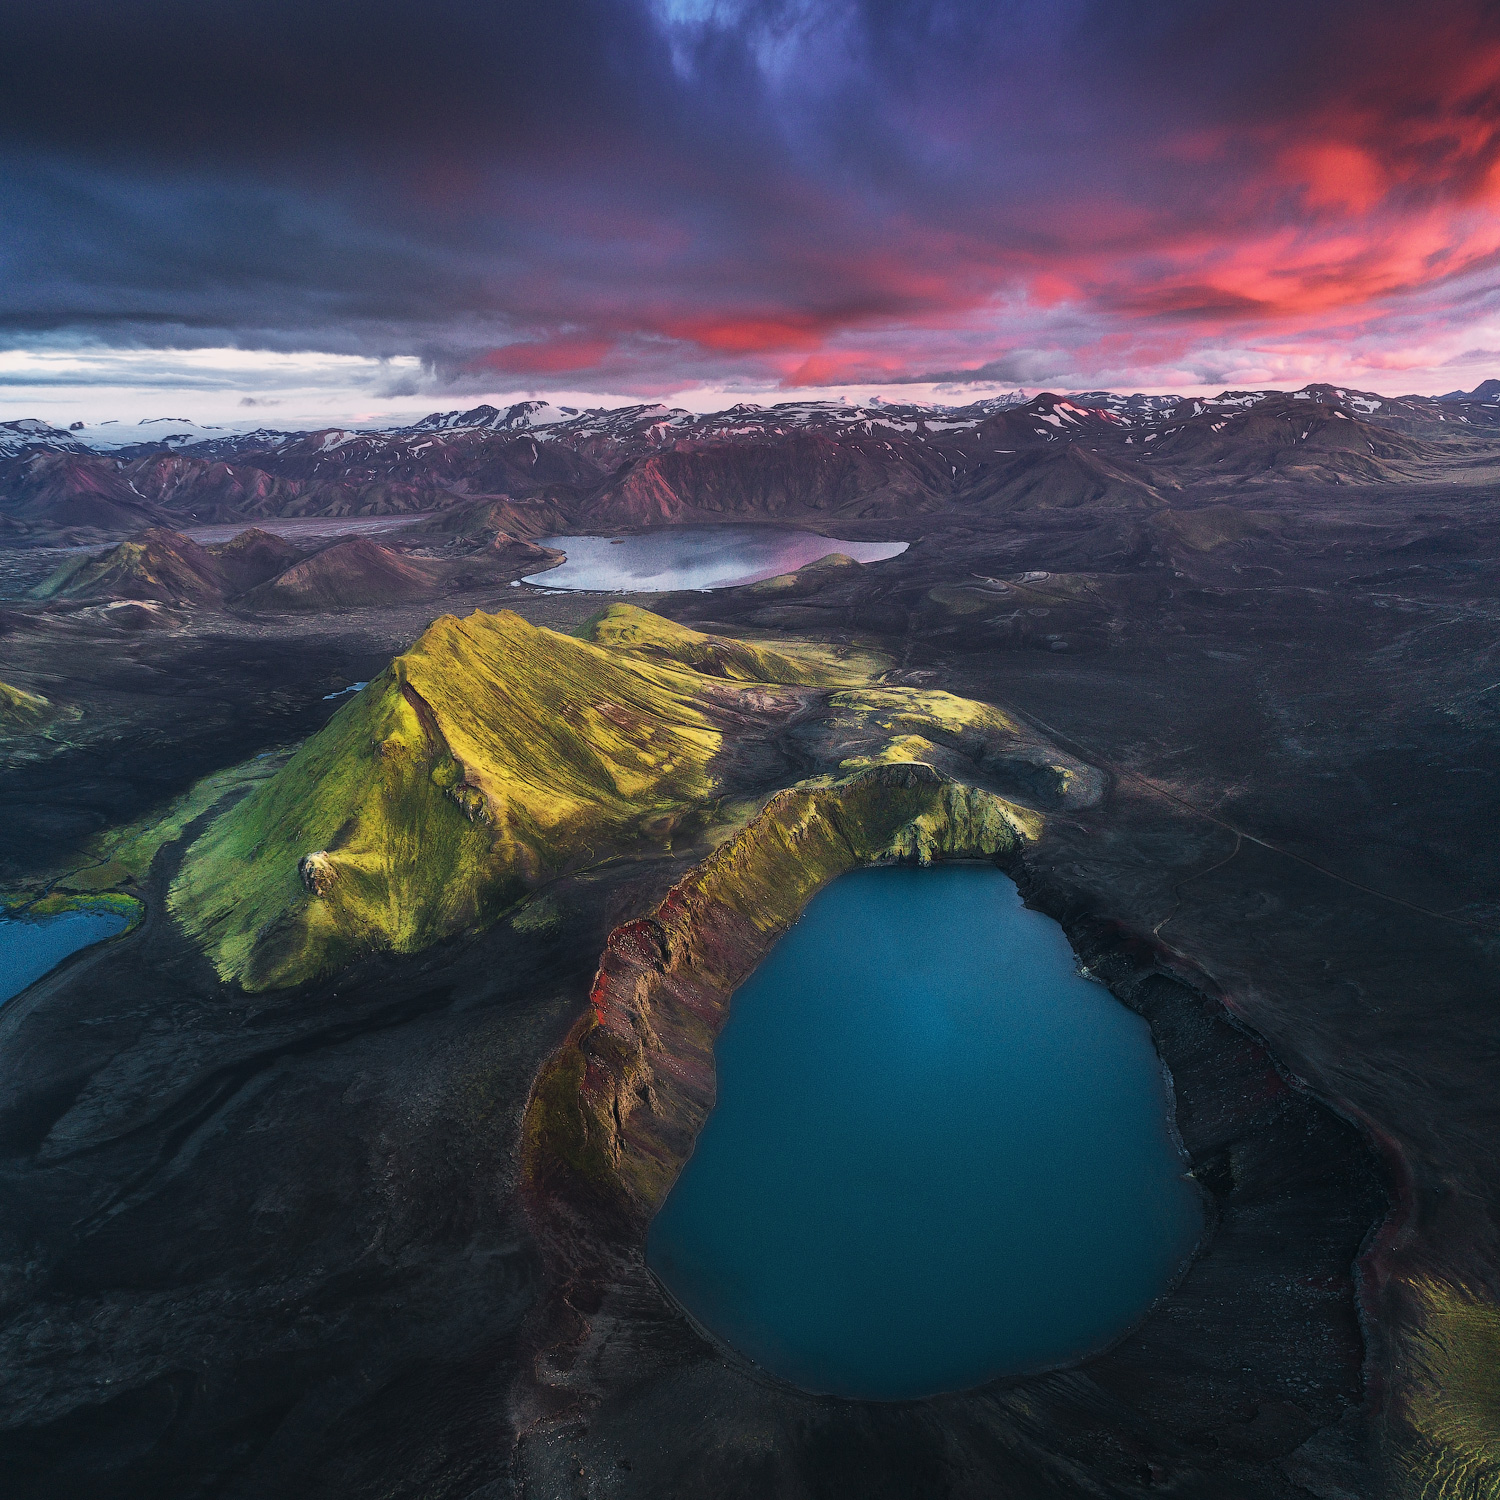 ที่ราบสูงของประเทศไอซ์แลนด์ในทะเลสาบภูเขาไปจำนวนมาก.